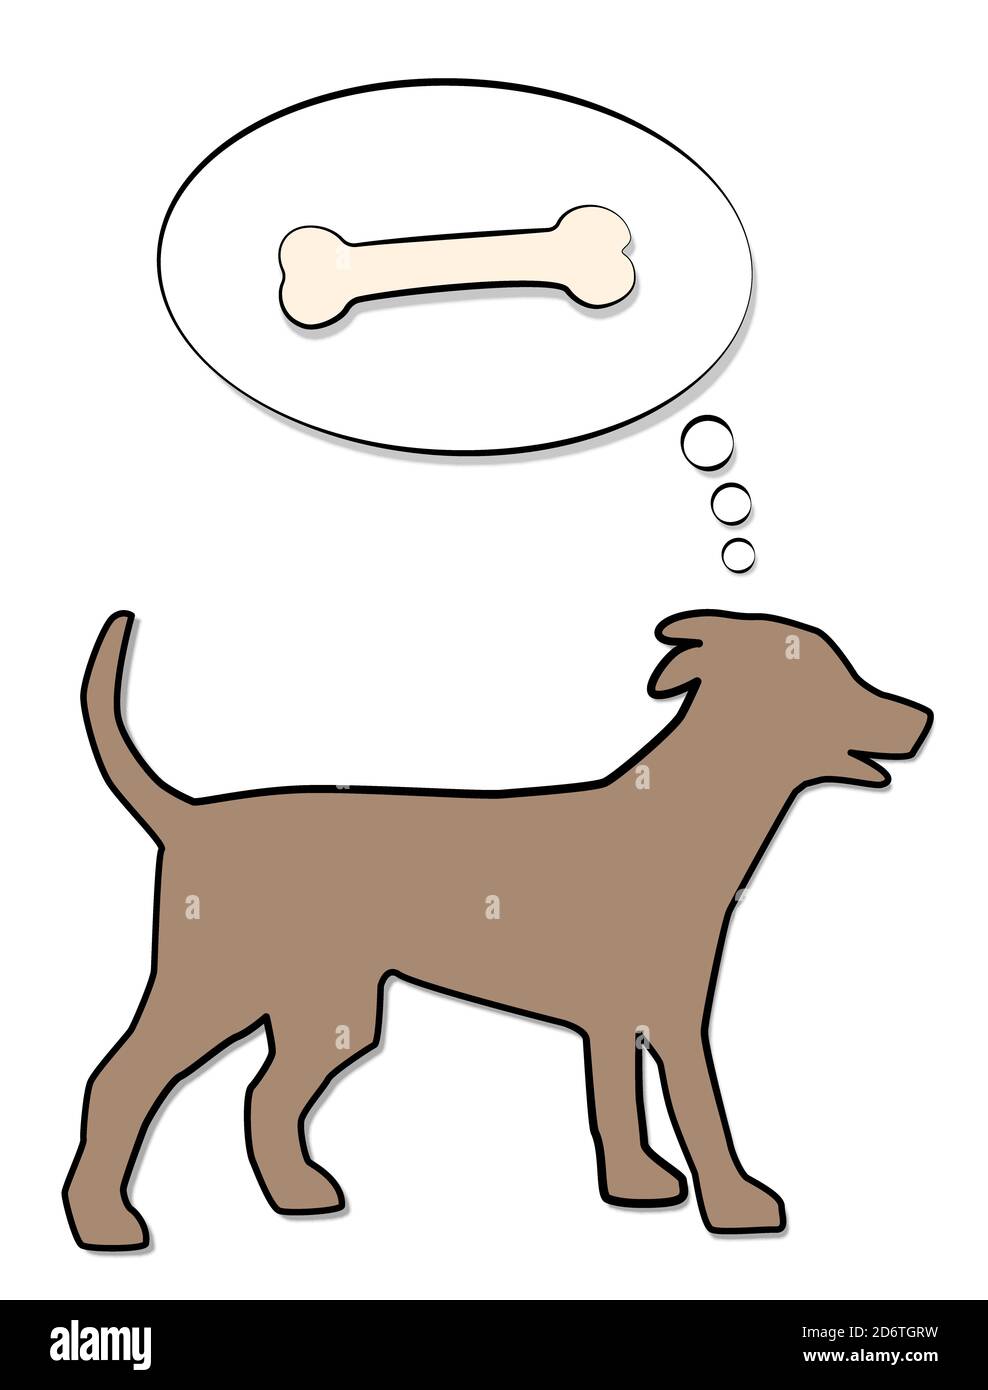 Hund Denken von Knochen in Gedanken Ballon, symbolisch für Hunger, Belohnung, Wunsch oder Instinkt - Comic-Illustration auf weißem Hintergrund. Stockfoto